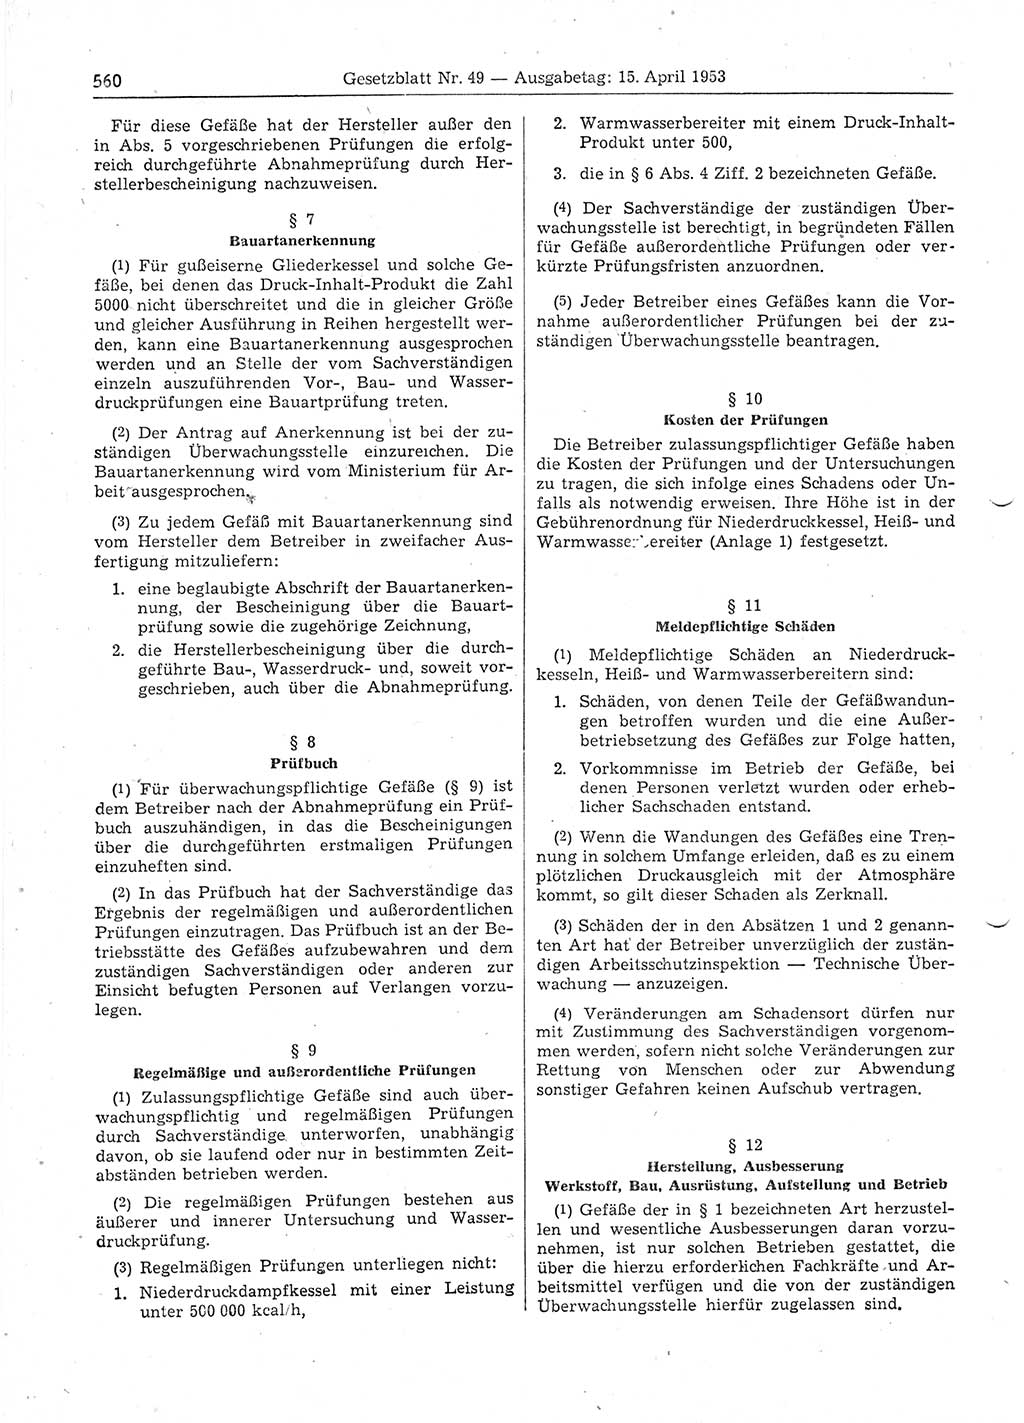 Gesetzblatt (GBl.) der Deutschen Demokratischen Republik (DDR) 1953, Seite 560 (GBl. DDR 1953, S. 560)